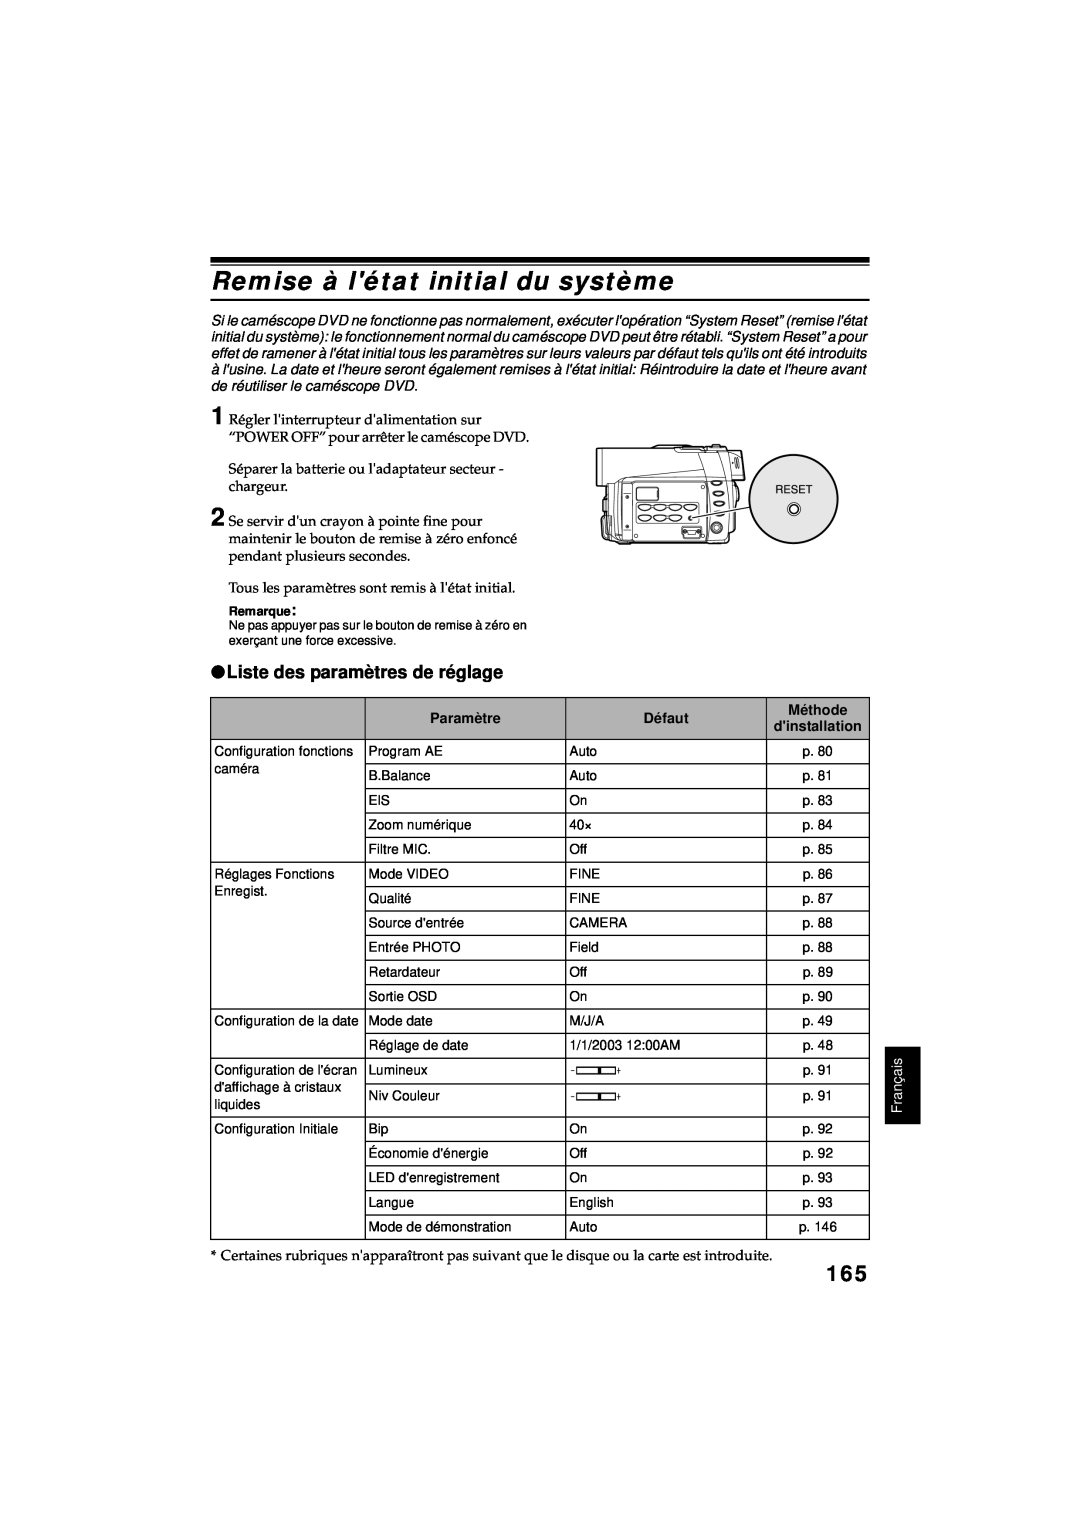 Hitachi DZ-MV380A Remise à létat initial du système, Liste des paramètres de réglage, Paramètre, Défaut, Méthode, Français 